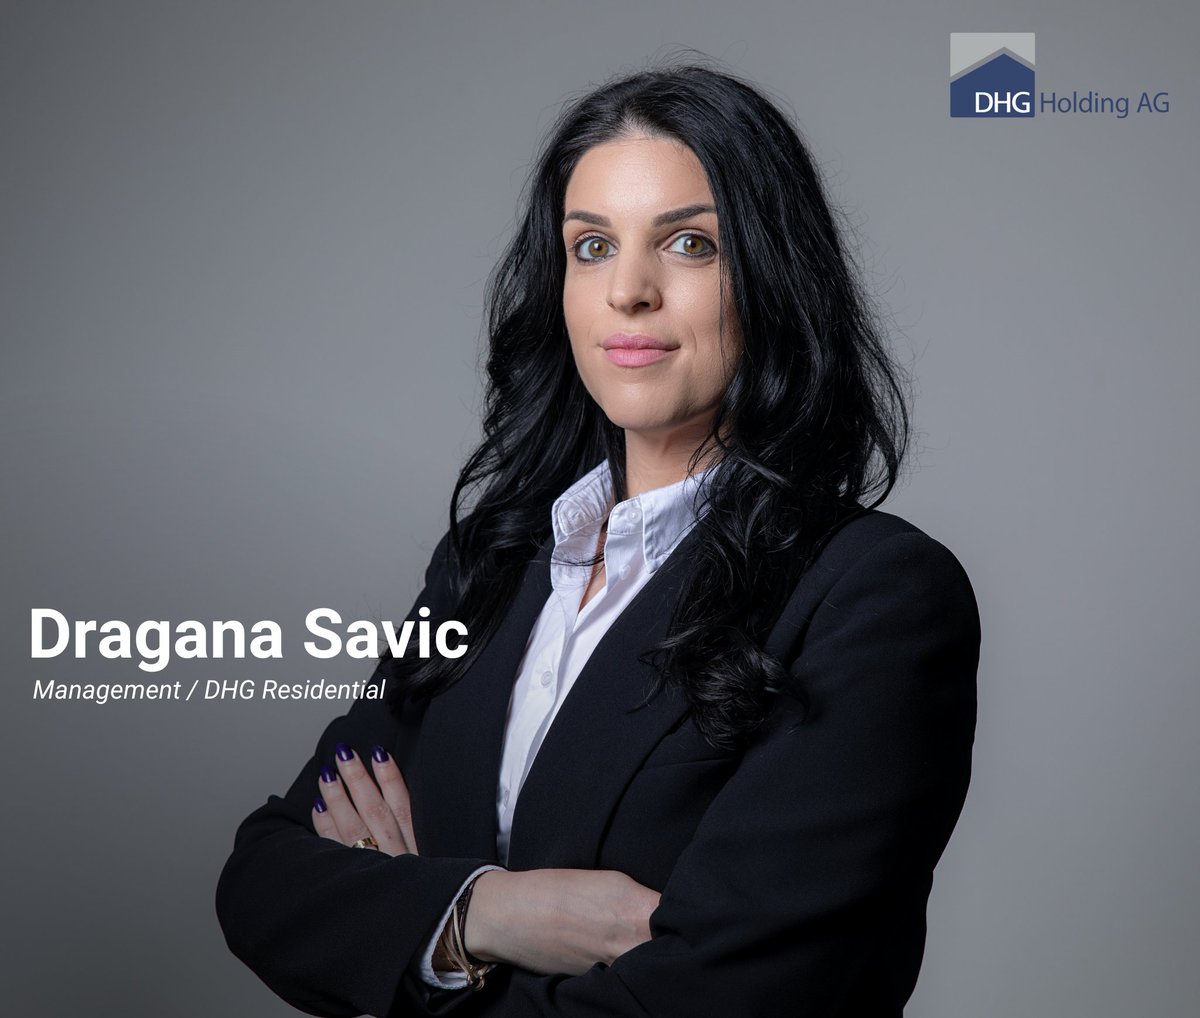 Wir stellen Ihnen Dragana Savic vor, verantwortlich für die DHG Real Estate Gruppe.

#Dhg #DHGGruppe #bezahlbaresWohnen #Projekte #Umbau #Neubau #Sanierung #Immobilienplanung #Immobilien #Immobilienentwicklung #Immobilienfinanzierung #Generalunternehmung